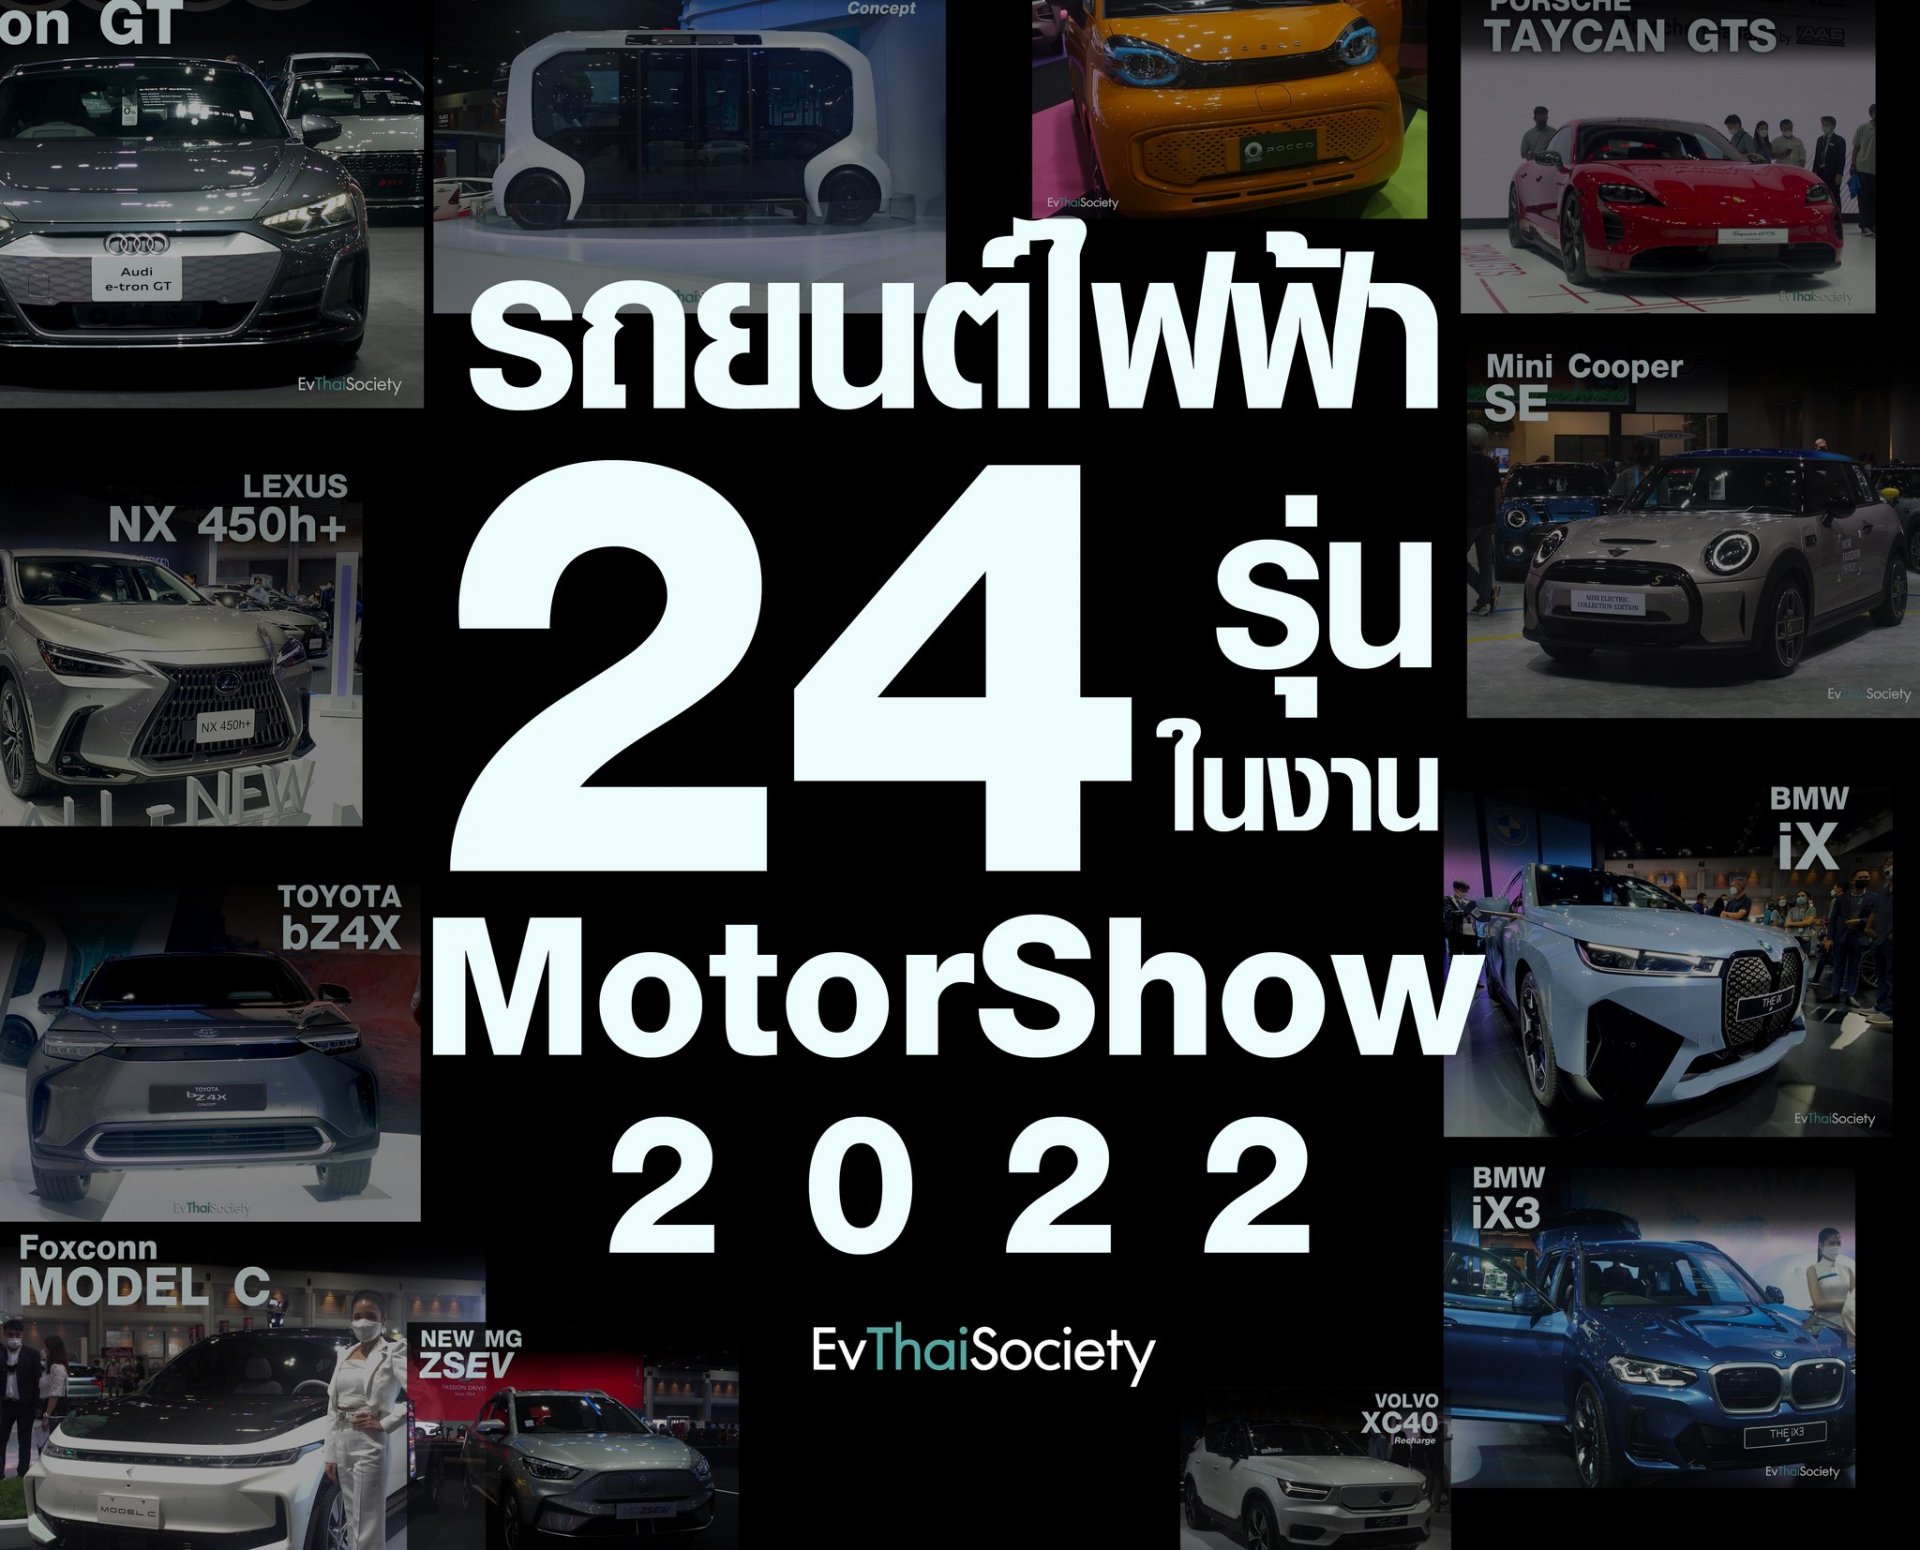 #อัพเดทจากรอบVIPก่อนใคร มัดรวมมาให้แล้ว EV รถยนต์์พลังงานไฟฟ้า ทั้งหมดที่มาโชว์ตัวในงาน Bangkok Motor Show 2022 นี้ มีรุ่นไหนบ้างมาดูกัน ก่อนที่จะมีการประกาศราคาในรอบสื่อมวลชนพรุ่งนี้ครับ ใครที่กำลังมองๆว่าอยู่ อยากเห็นอยากดู อยากจับ ลองนั่ง บอกเลยว่าห้าม